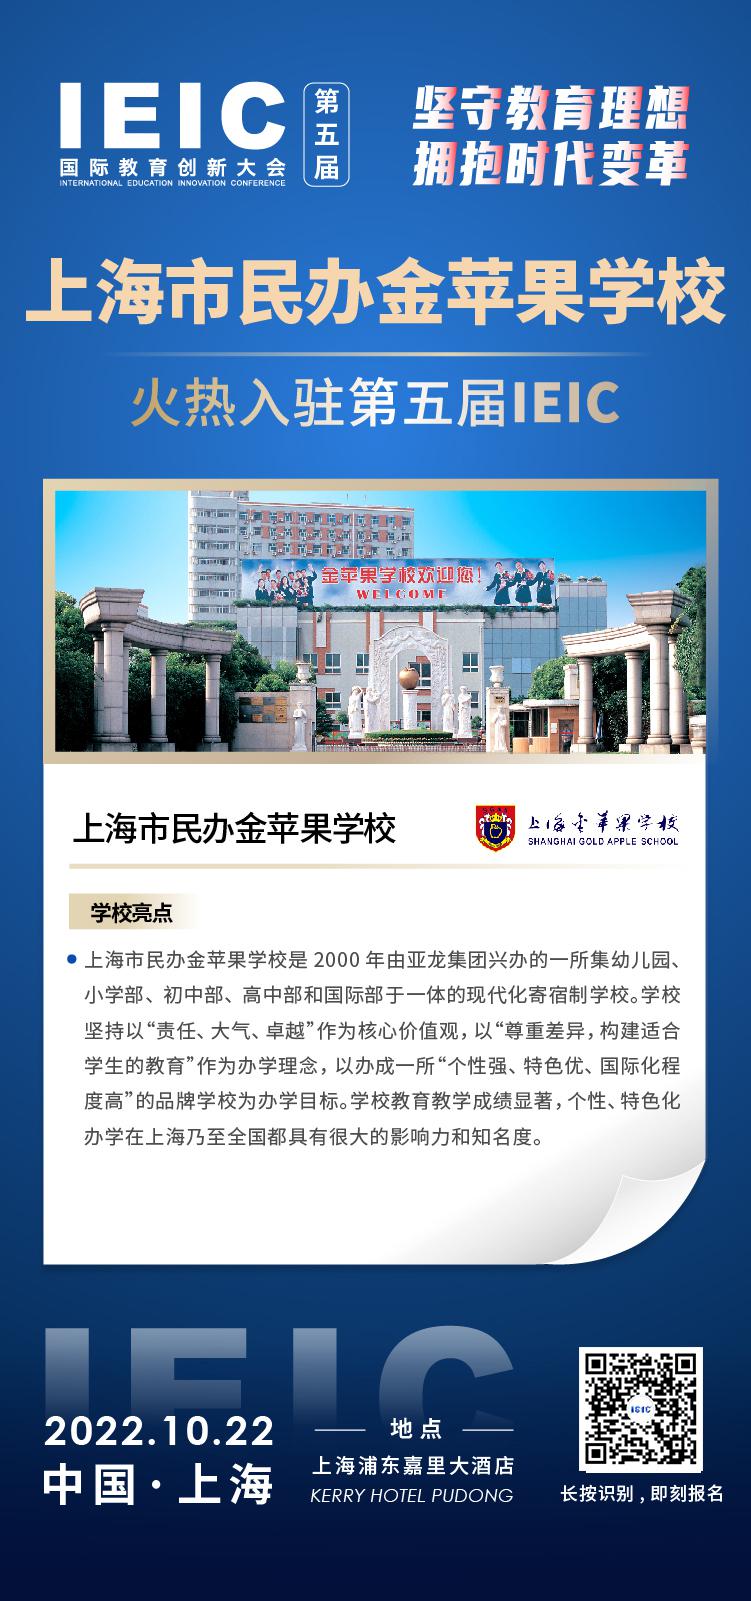 上海民办金苹果学校成功入驻参加2022年远播第五届IEIC国际教育创新大会